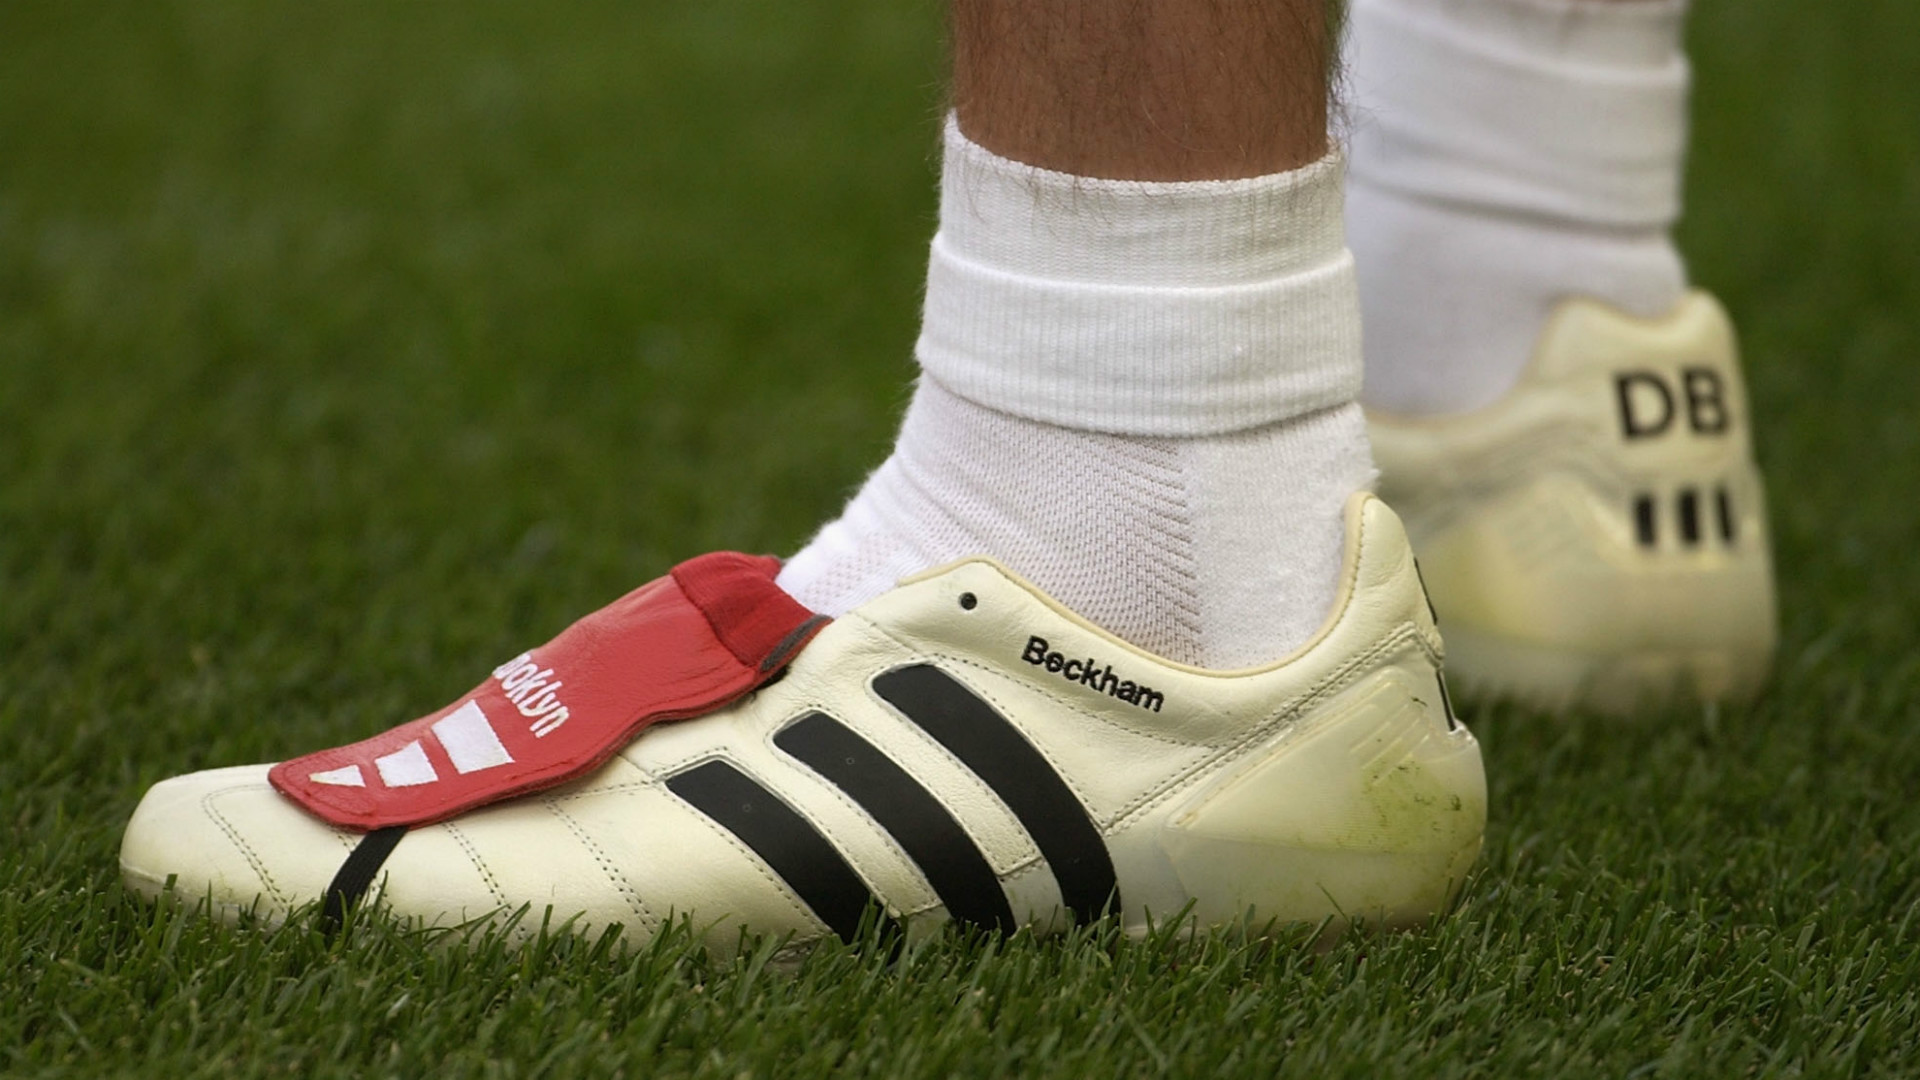 Adidas Predator Mania: David Beckham's iconic 2002 boots set for re-release  | Goal.com